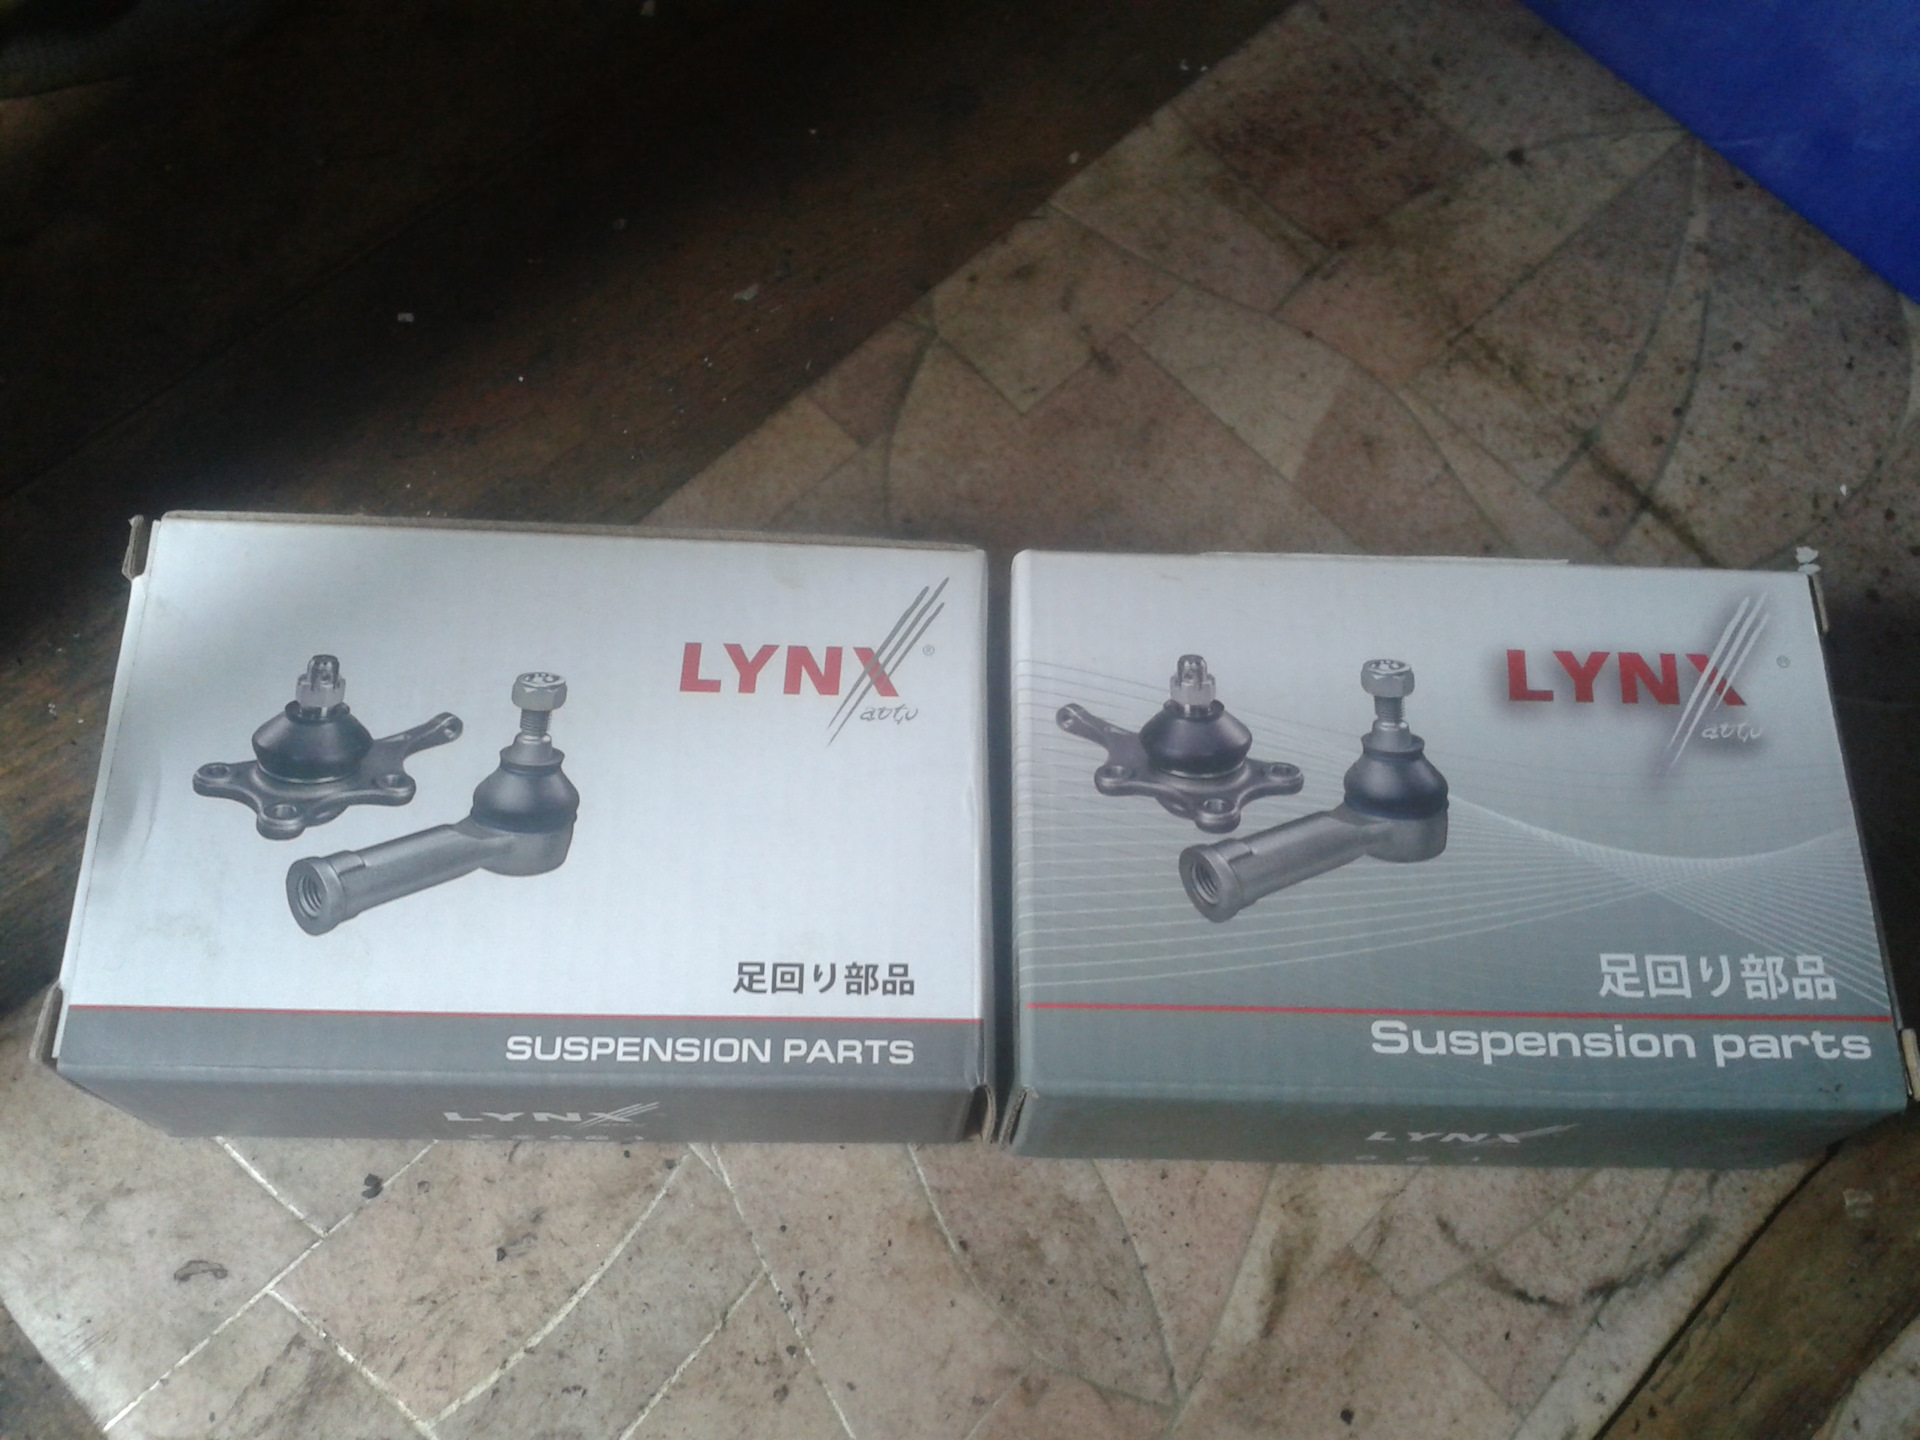 Производитель lynx отзывы. Фирма Lynx. Lynx фирма производитель. Производитель автозапчастей фирмы Линкс. LYNXAUTO производитель.